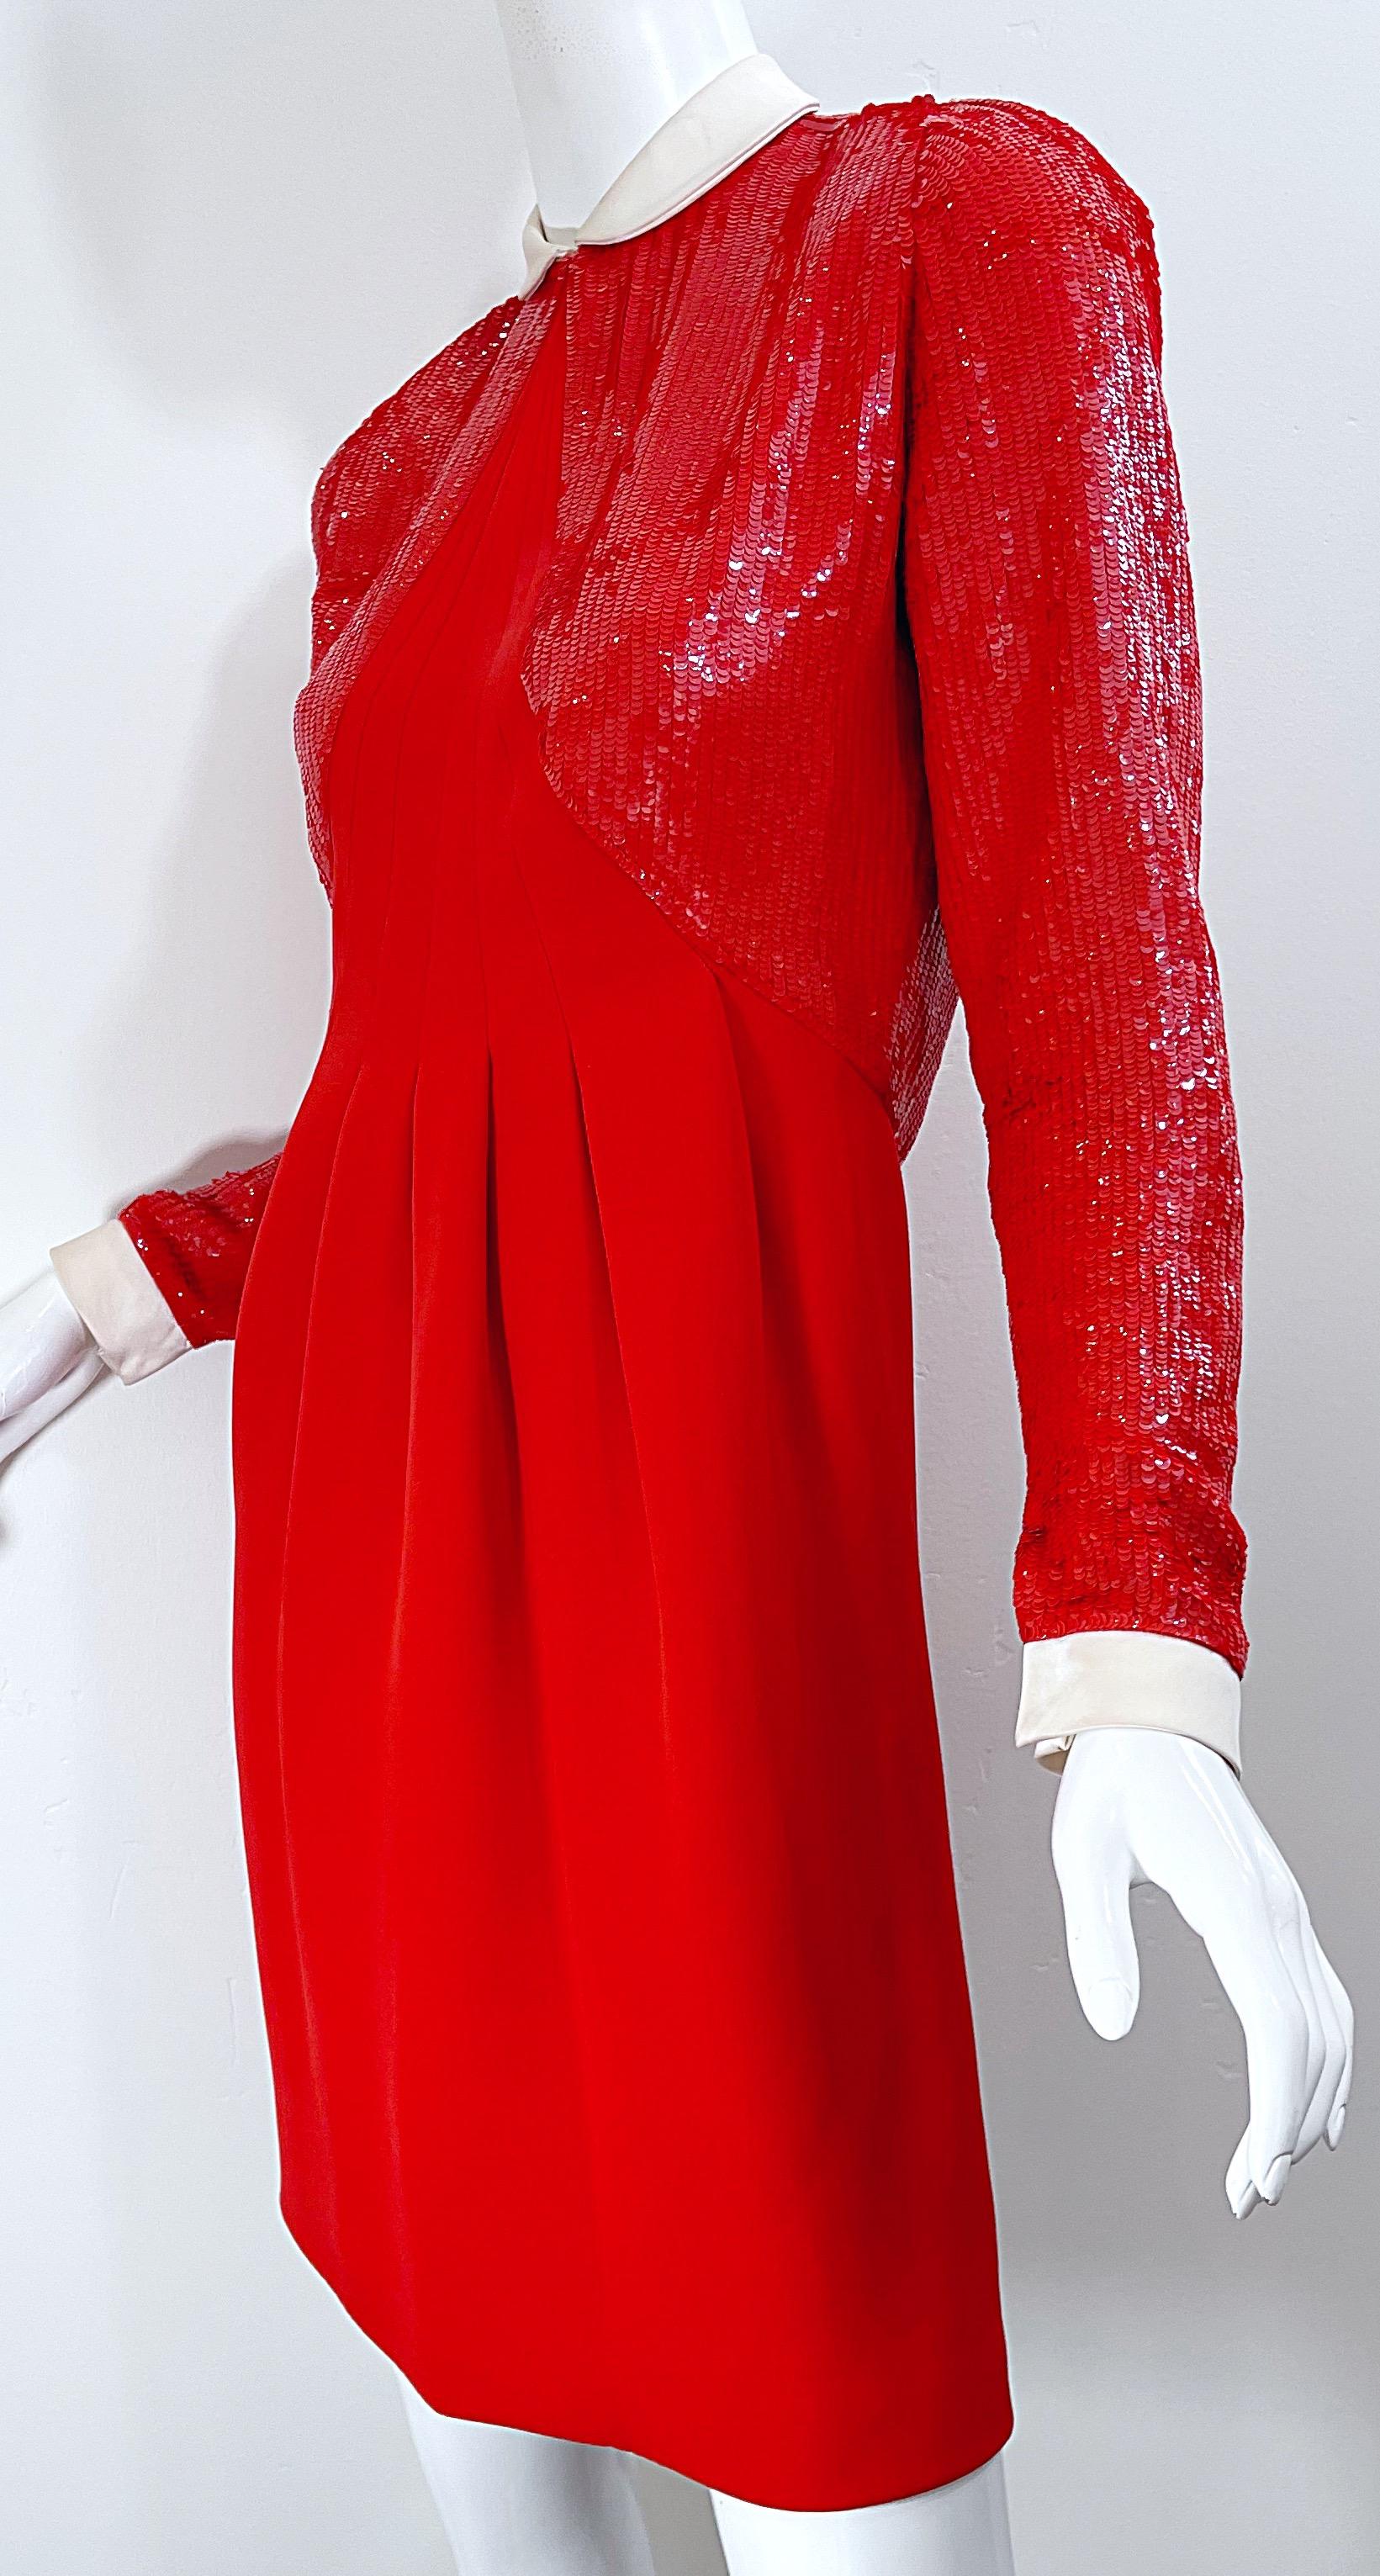 Geoffrey Beene 1980s Lipstick Red Faux Bolero Vintage 80s Tuxedo Dress  For Sale 7